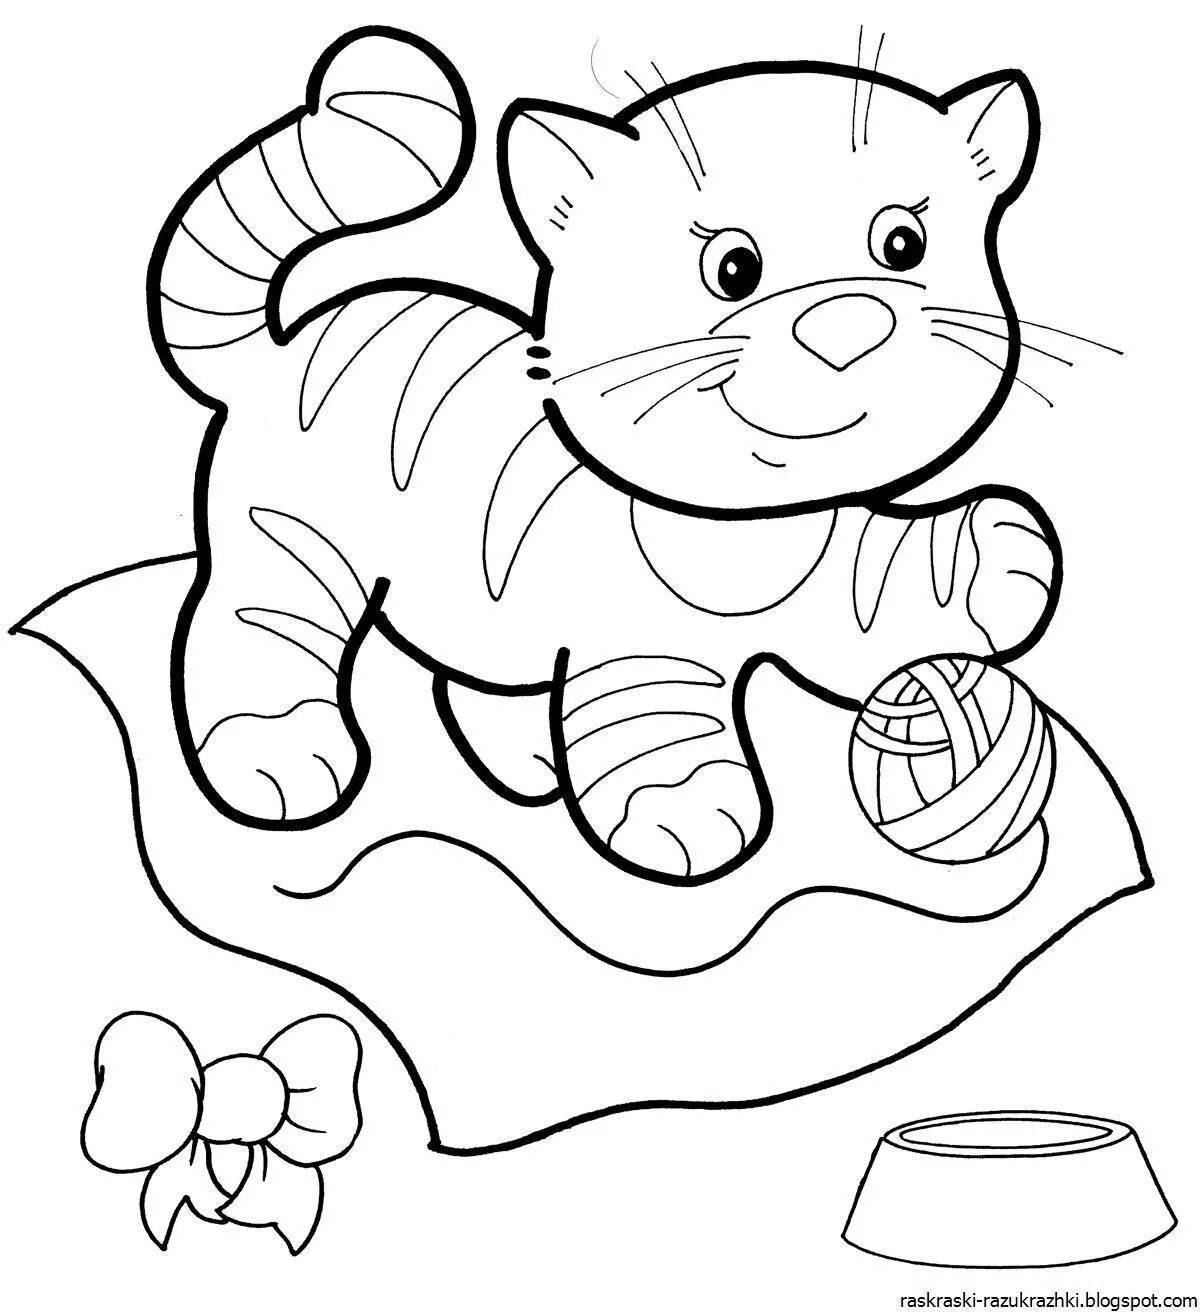 Сказочная раскраска кота для дошкольников